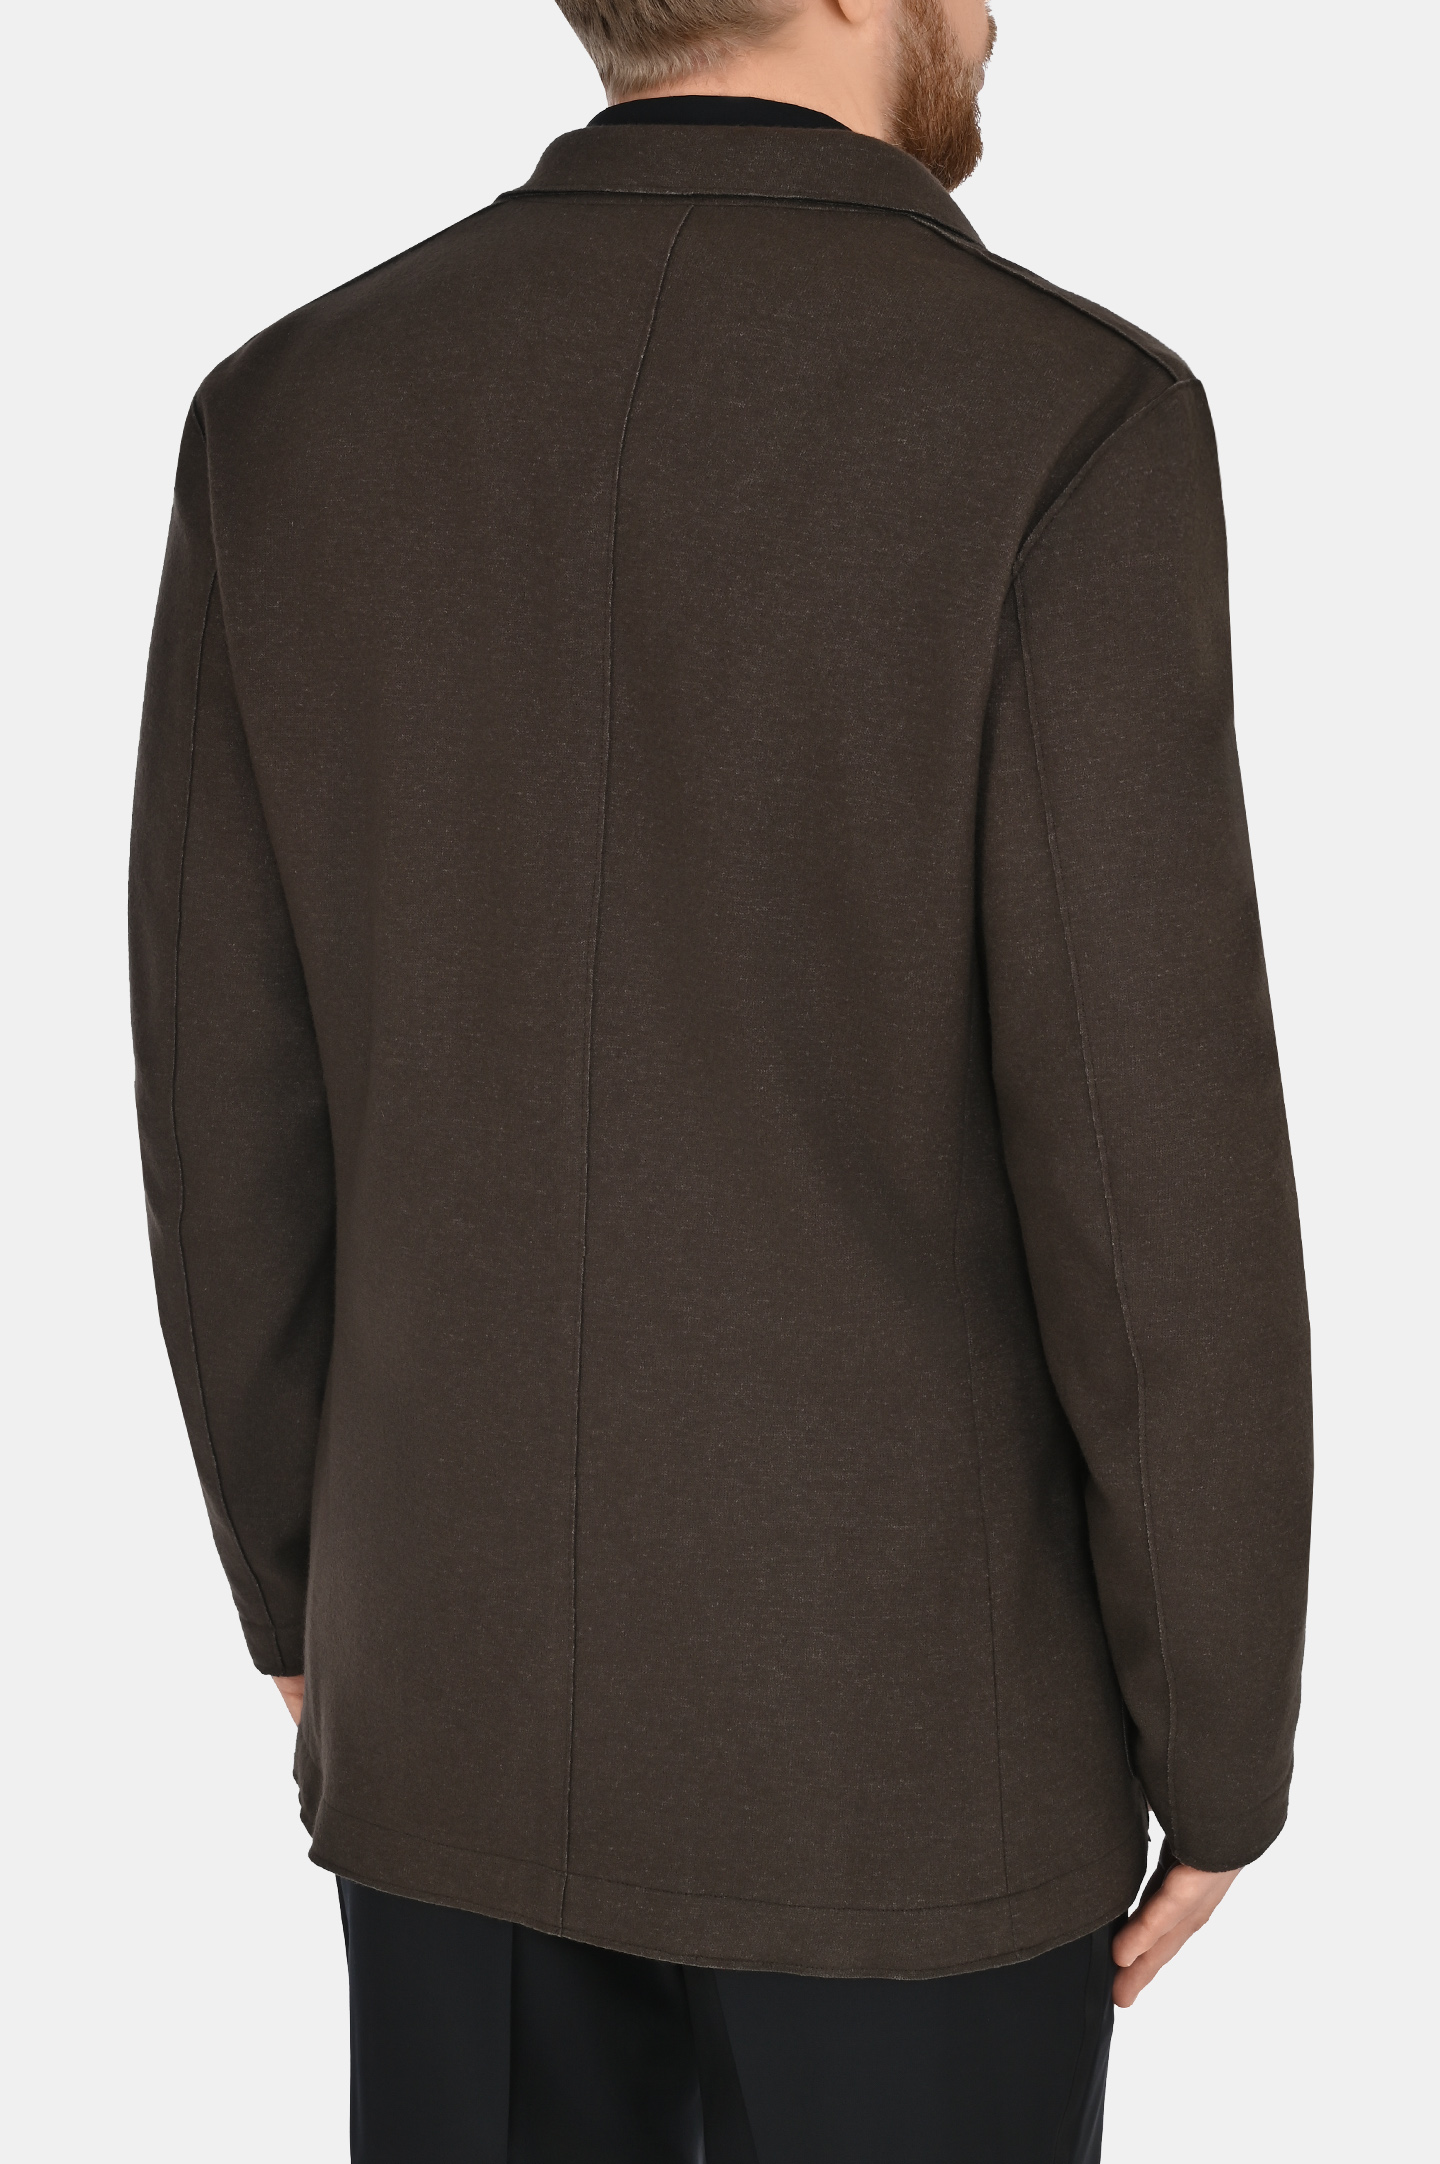 Пиджак CANALI JJ02854 J0151, цвет: Коричневый, Мужской